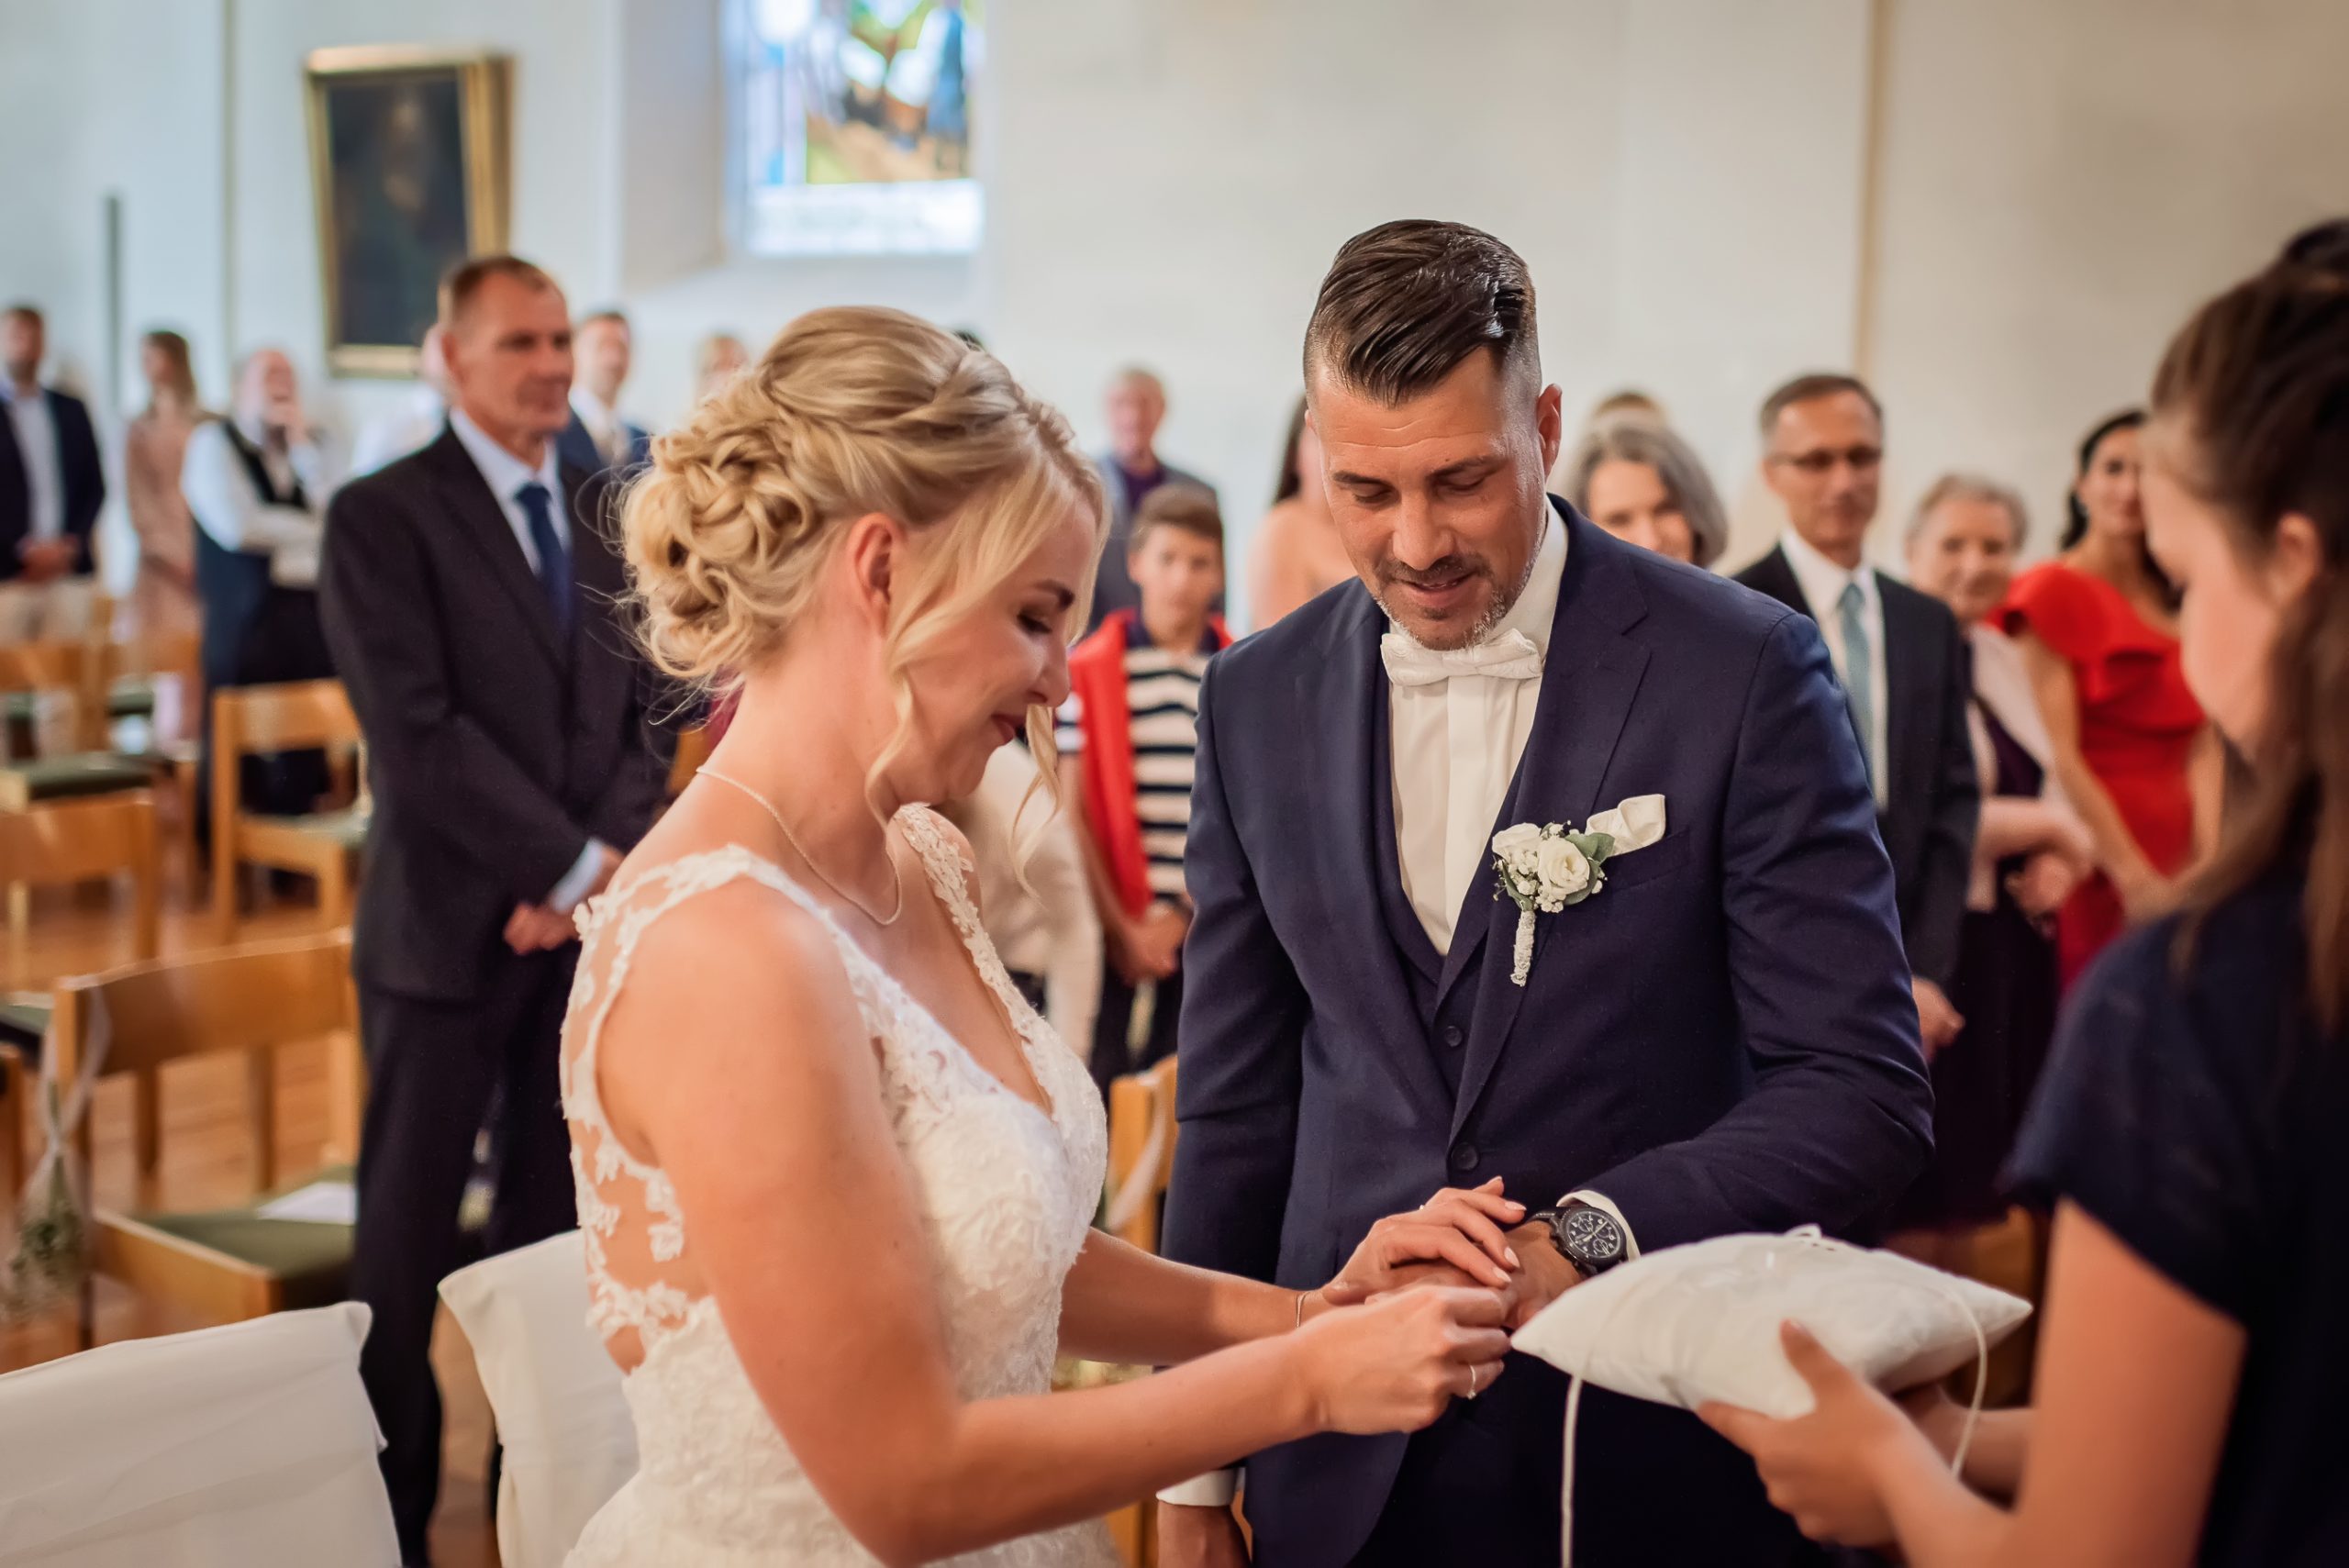 Foto von der Ringtausch-Zeremonie in einer Kirche in Friesenheim. Die Hände des Brautpaars sind zu sehen, während die Braut den Ring auf den Finger des Bräutigams setzt.